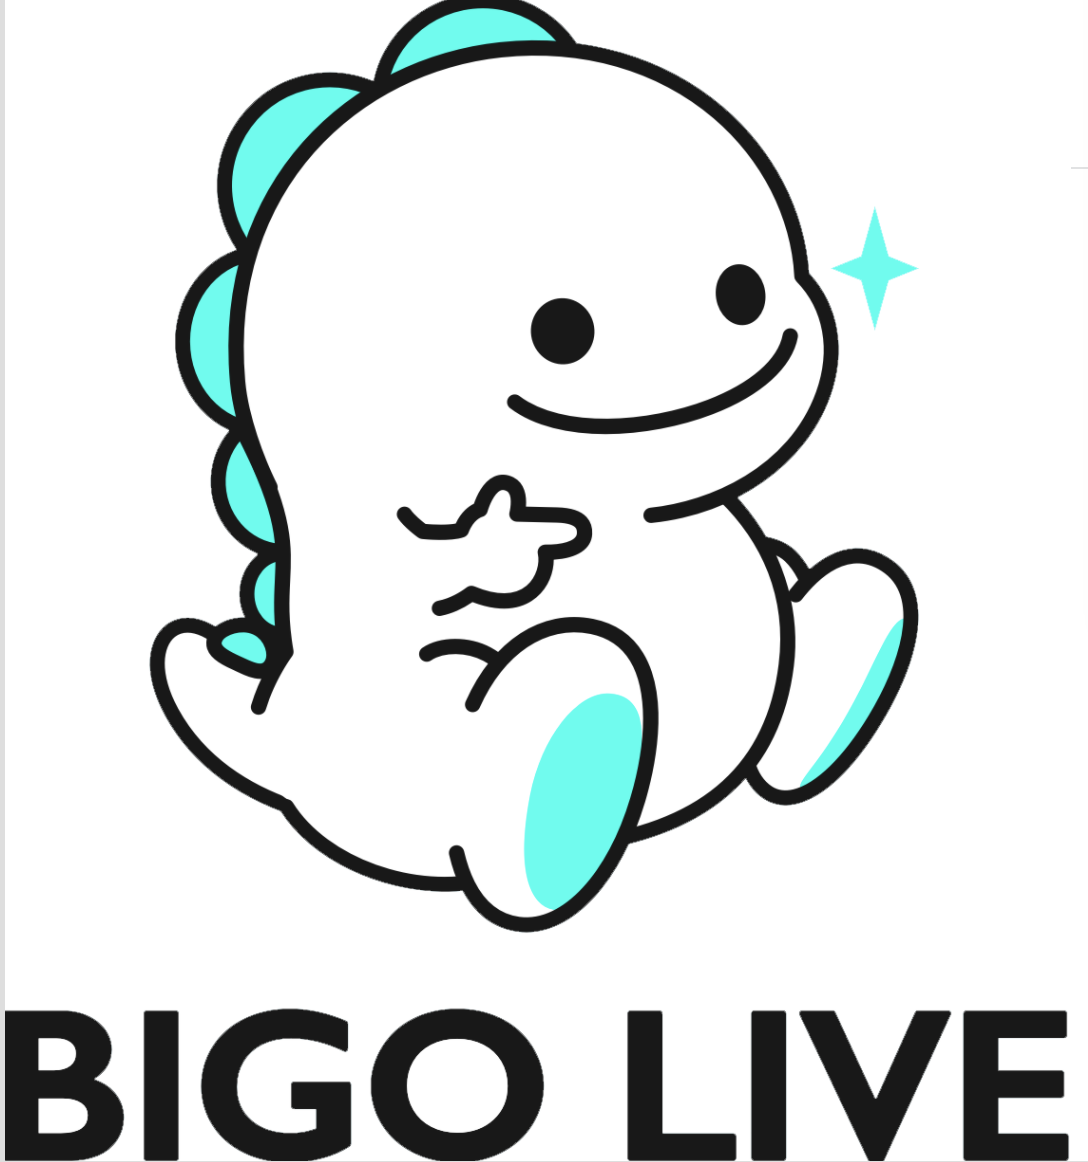 //performingassetstalent.com/wp-content/uploads/2021/12/Bigo-Live-Dino.png